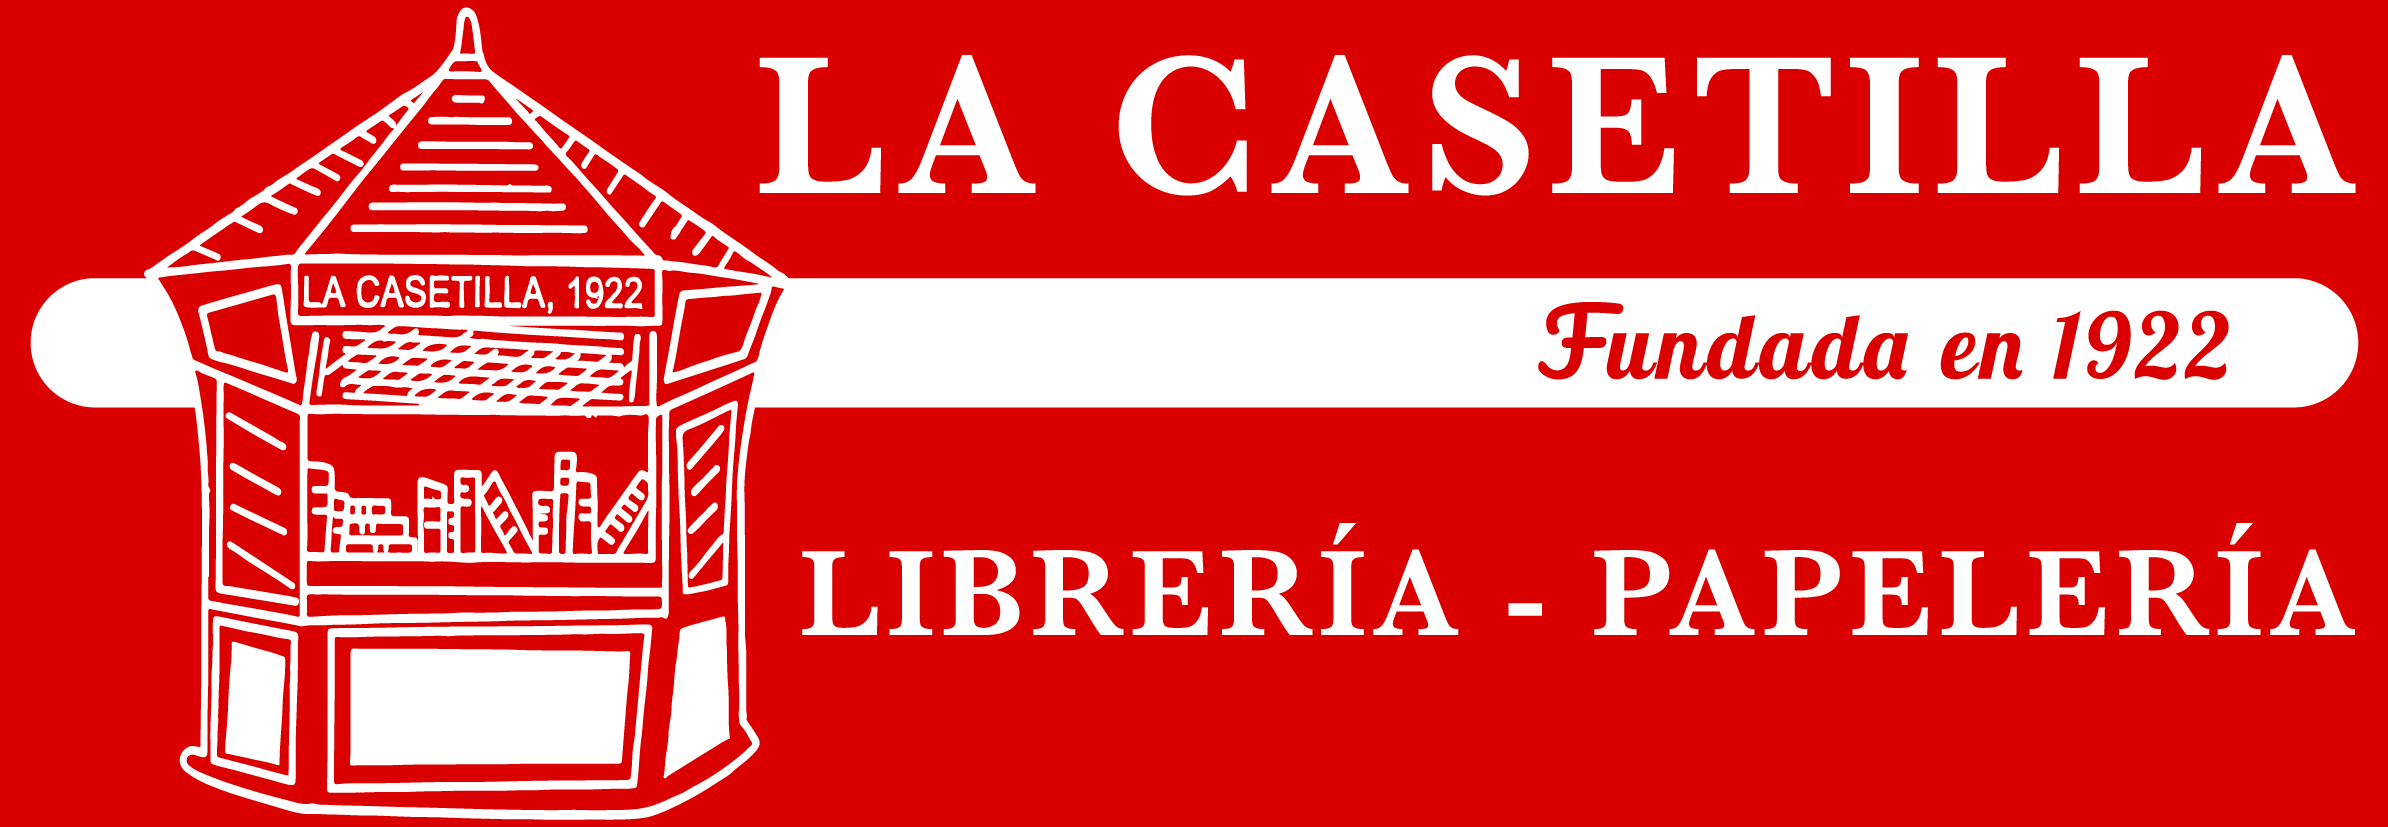 La Casetilla